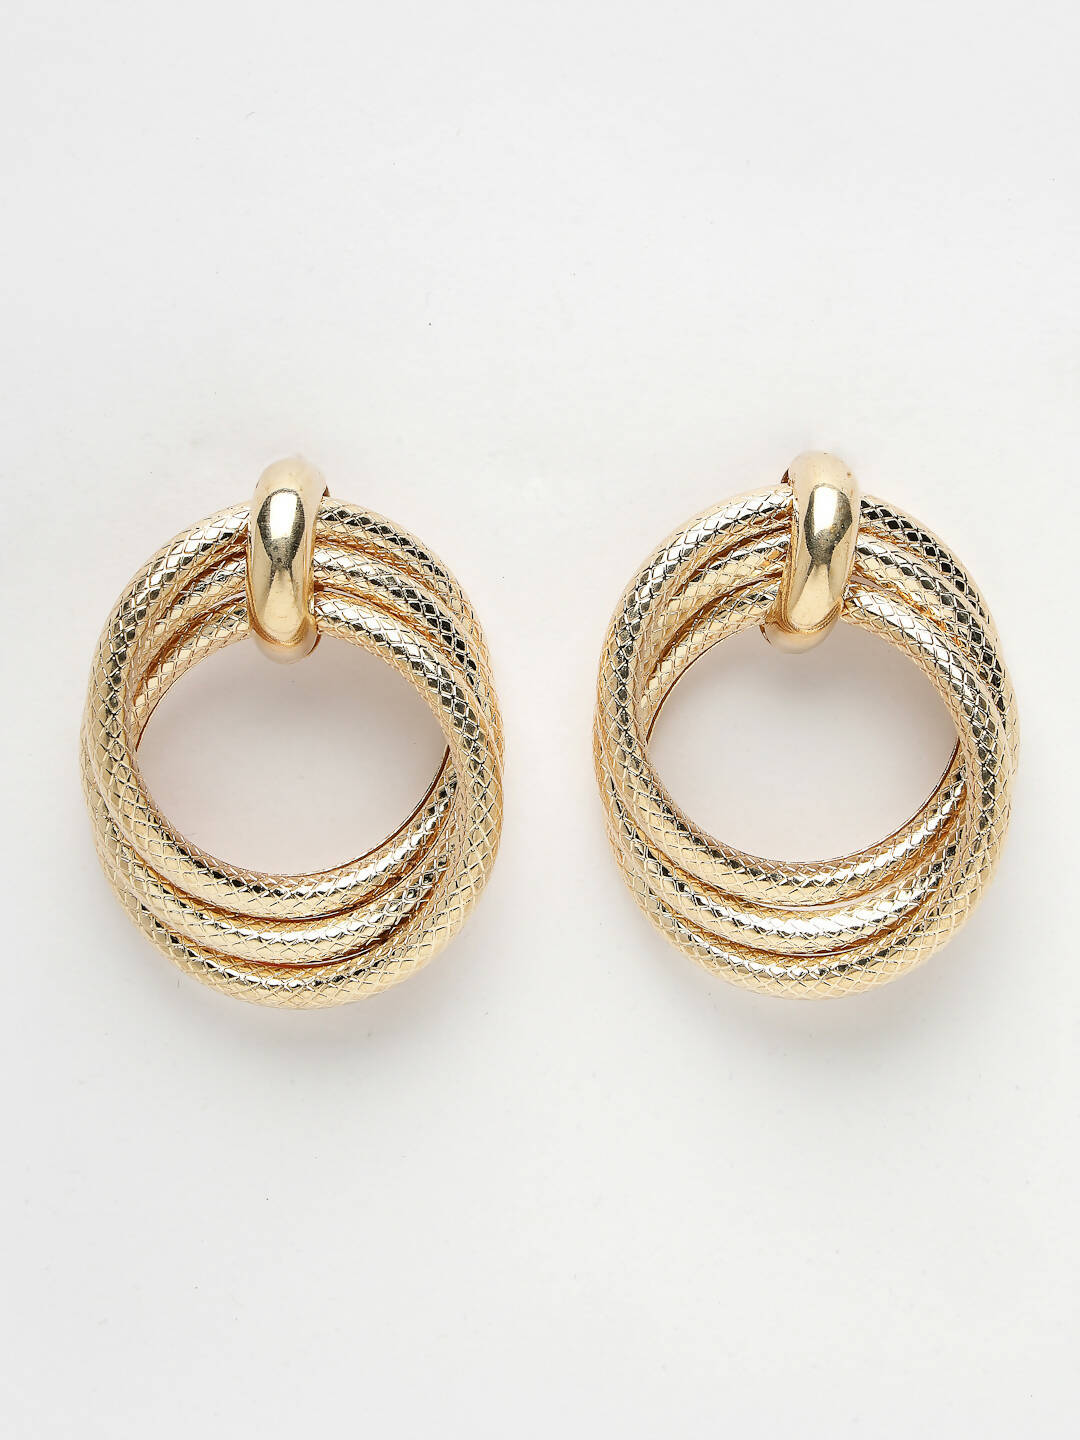 NVR Women's Gold-Plated Hoop Earrings - Distacart